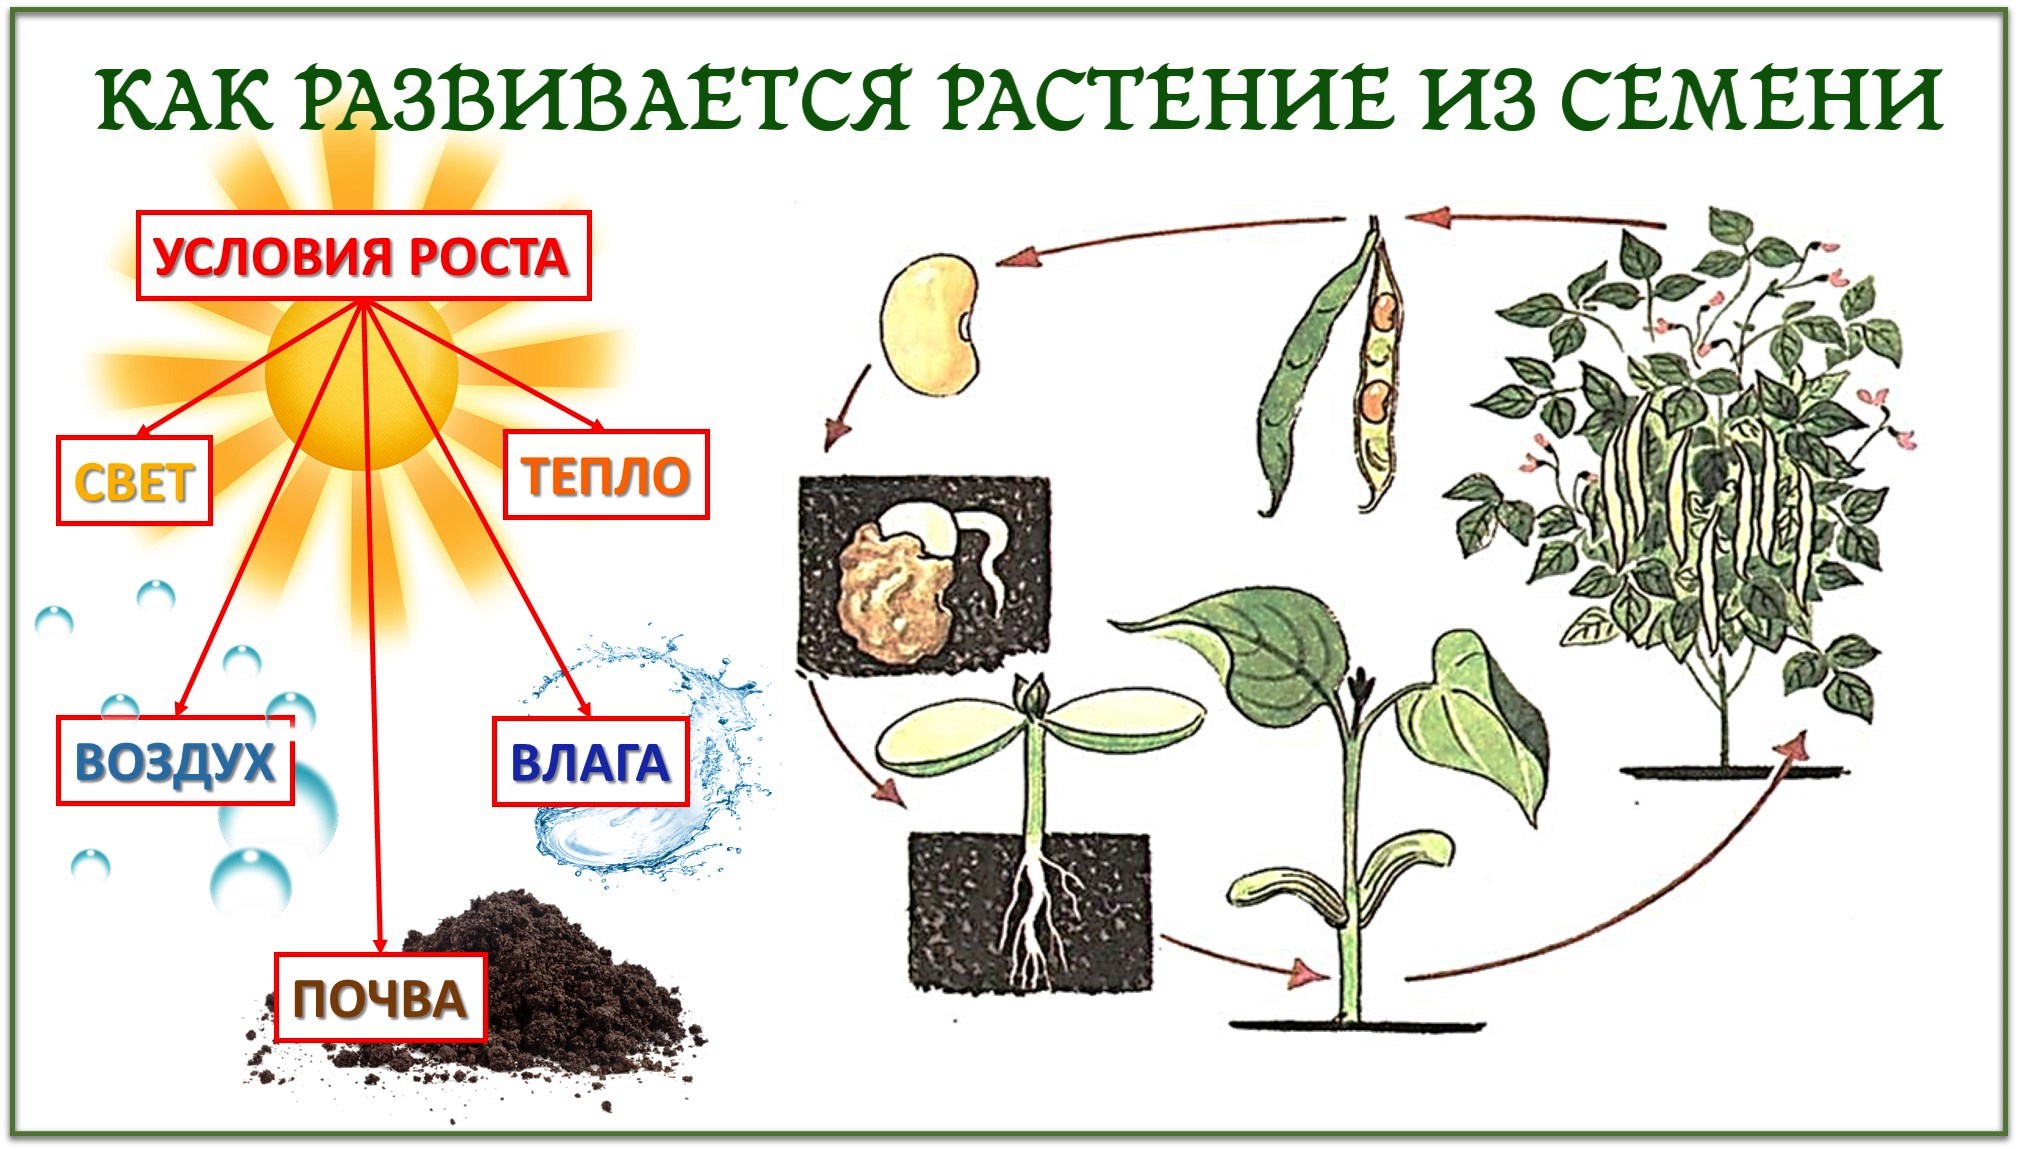 Признаки описывающие рост растения. Условия роста и развития растений. Схема роста растения. Этапы развития растения из семени. Этапы жизни растений.